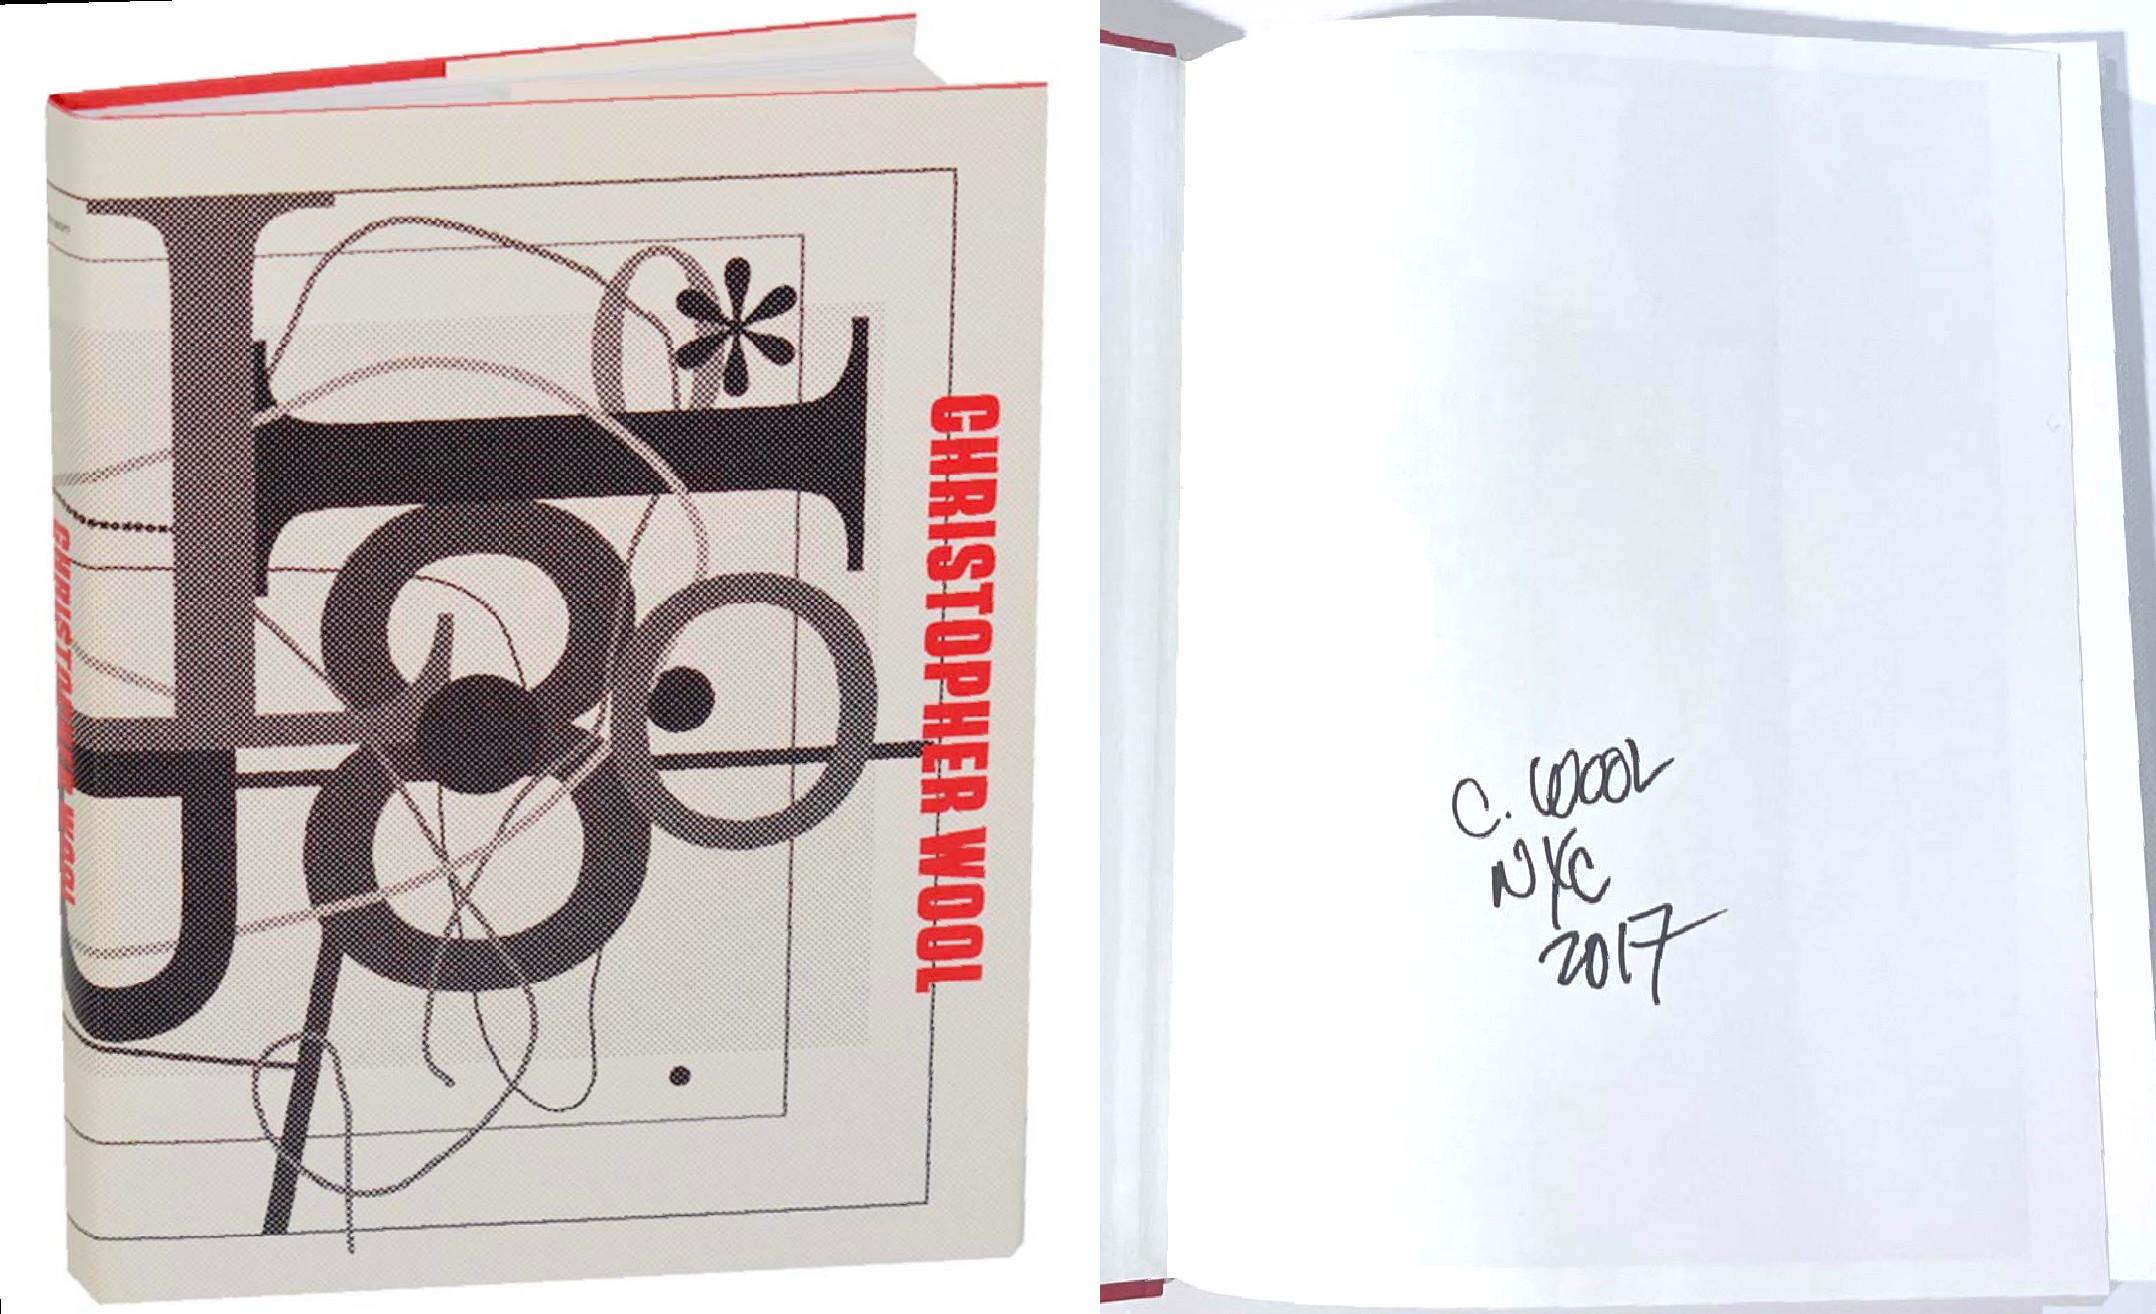 Guggenheim-Monographie von Christopher Wool, handsigniert und datiert von Christopher Wool